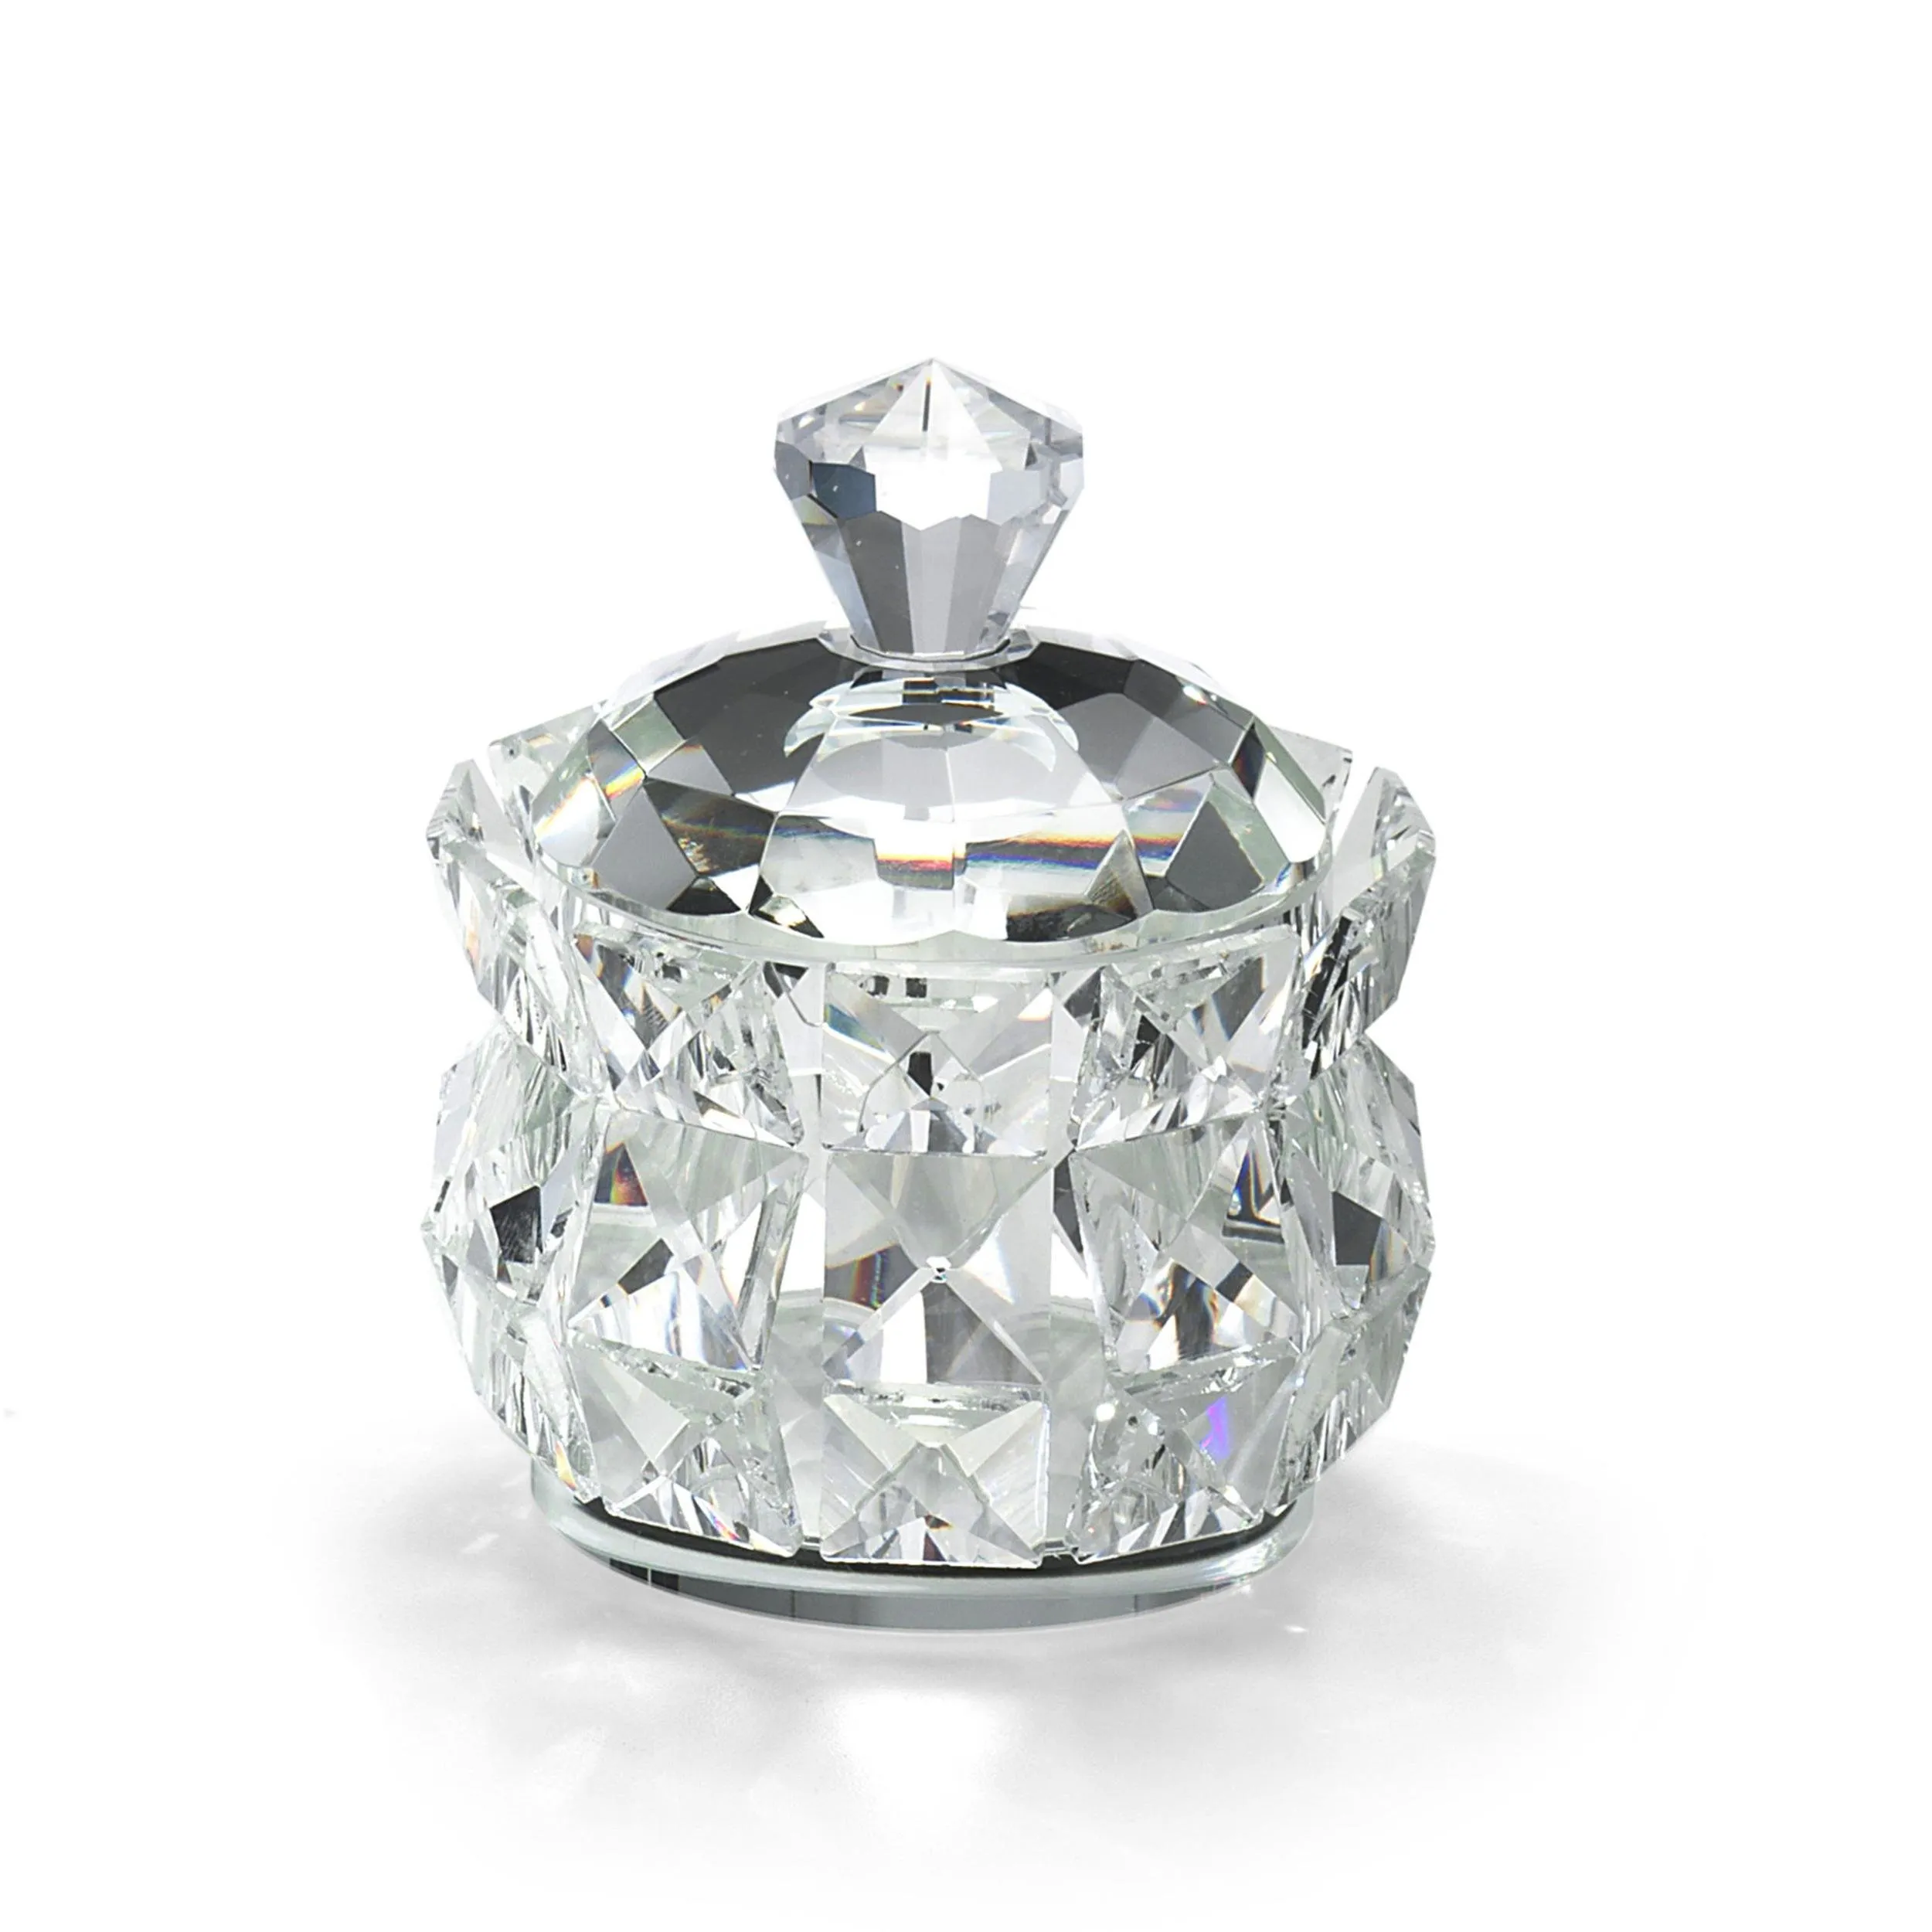 Scatola in Cristallo K9 Diamante 10,5x10x5xh11 cm in scatola regalo , per uso bomboniera matrimonio comunione cresima